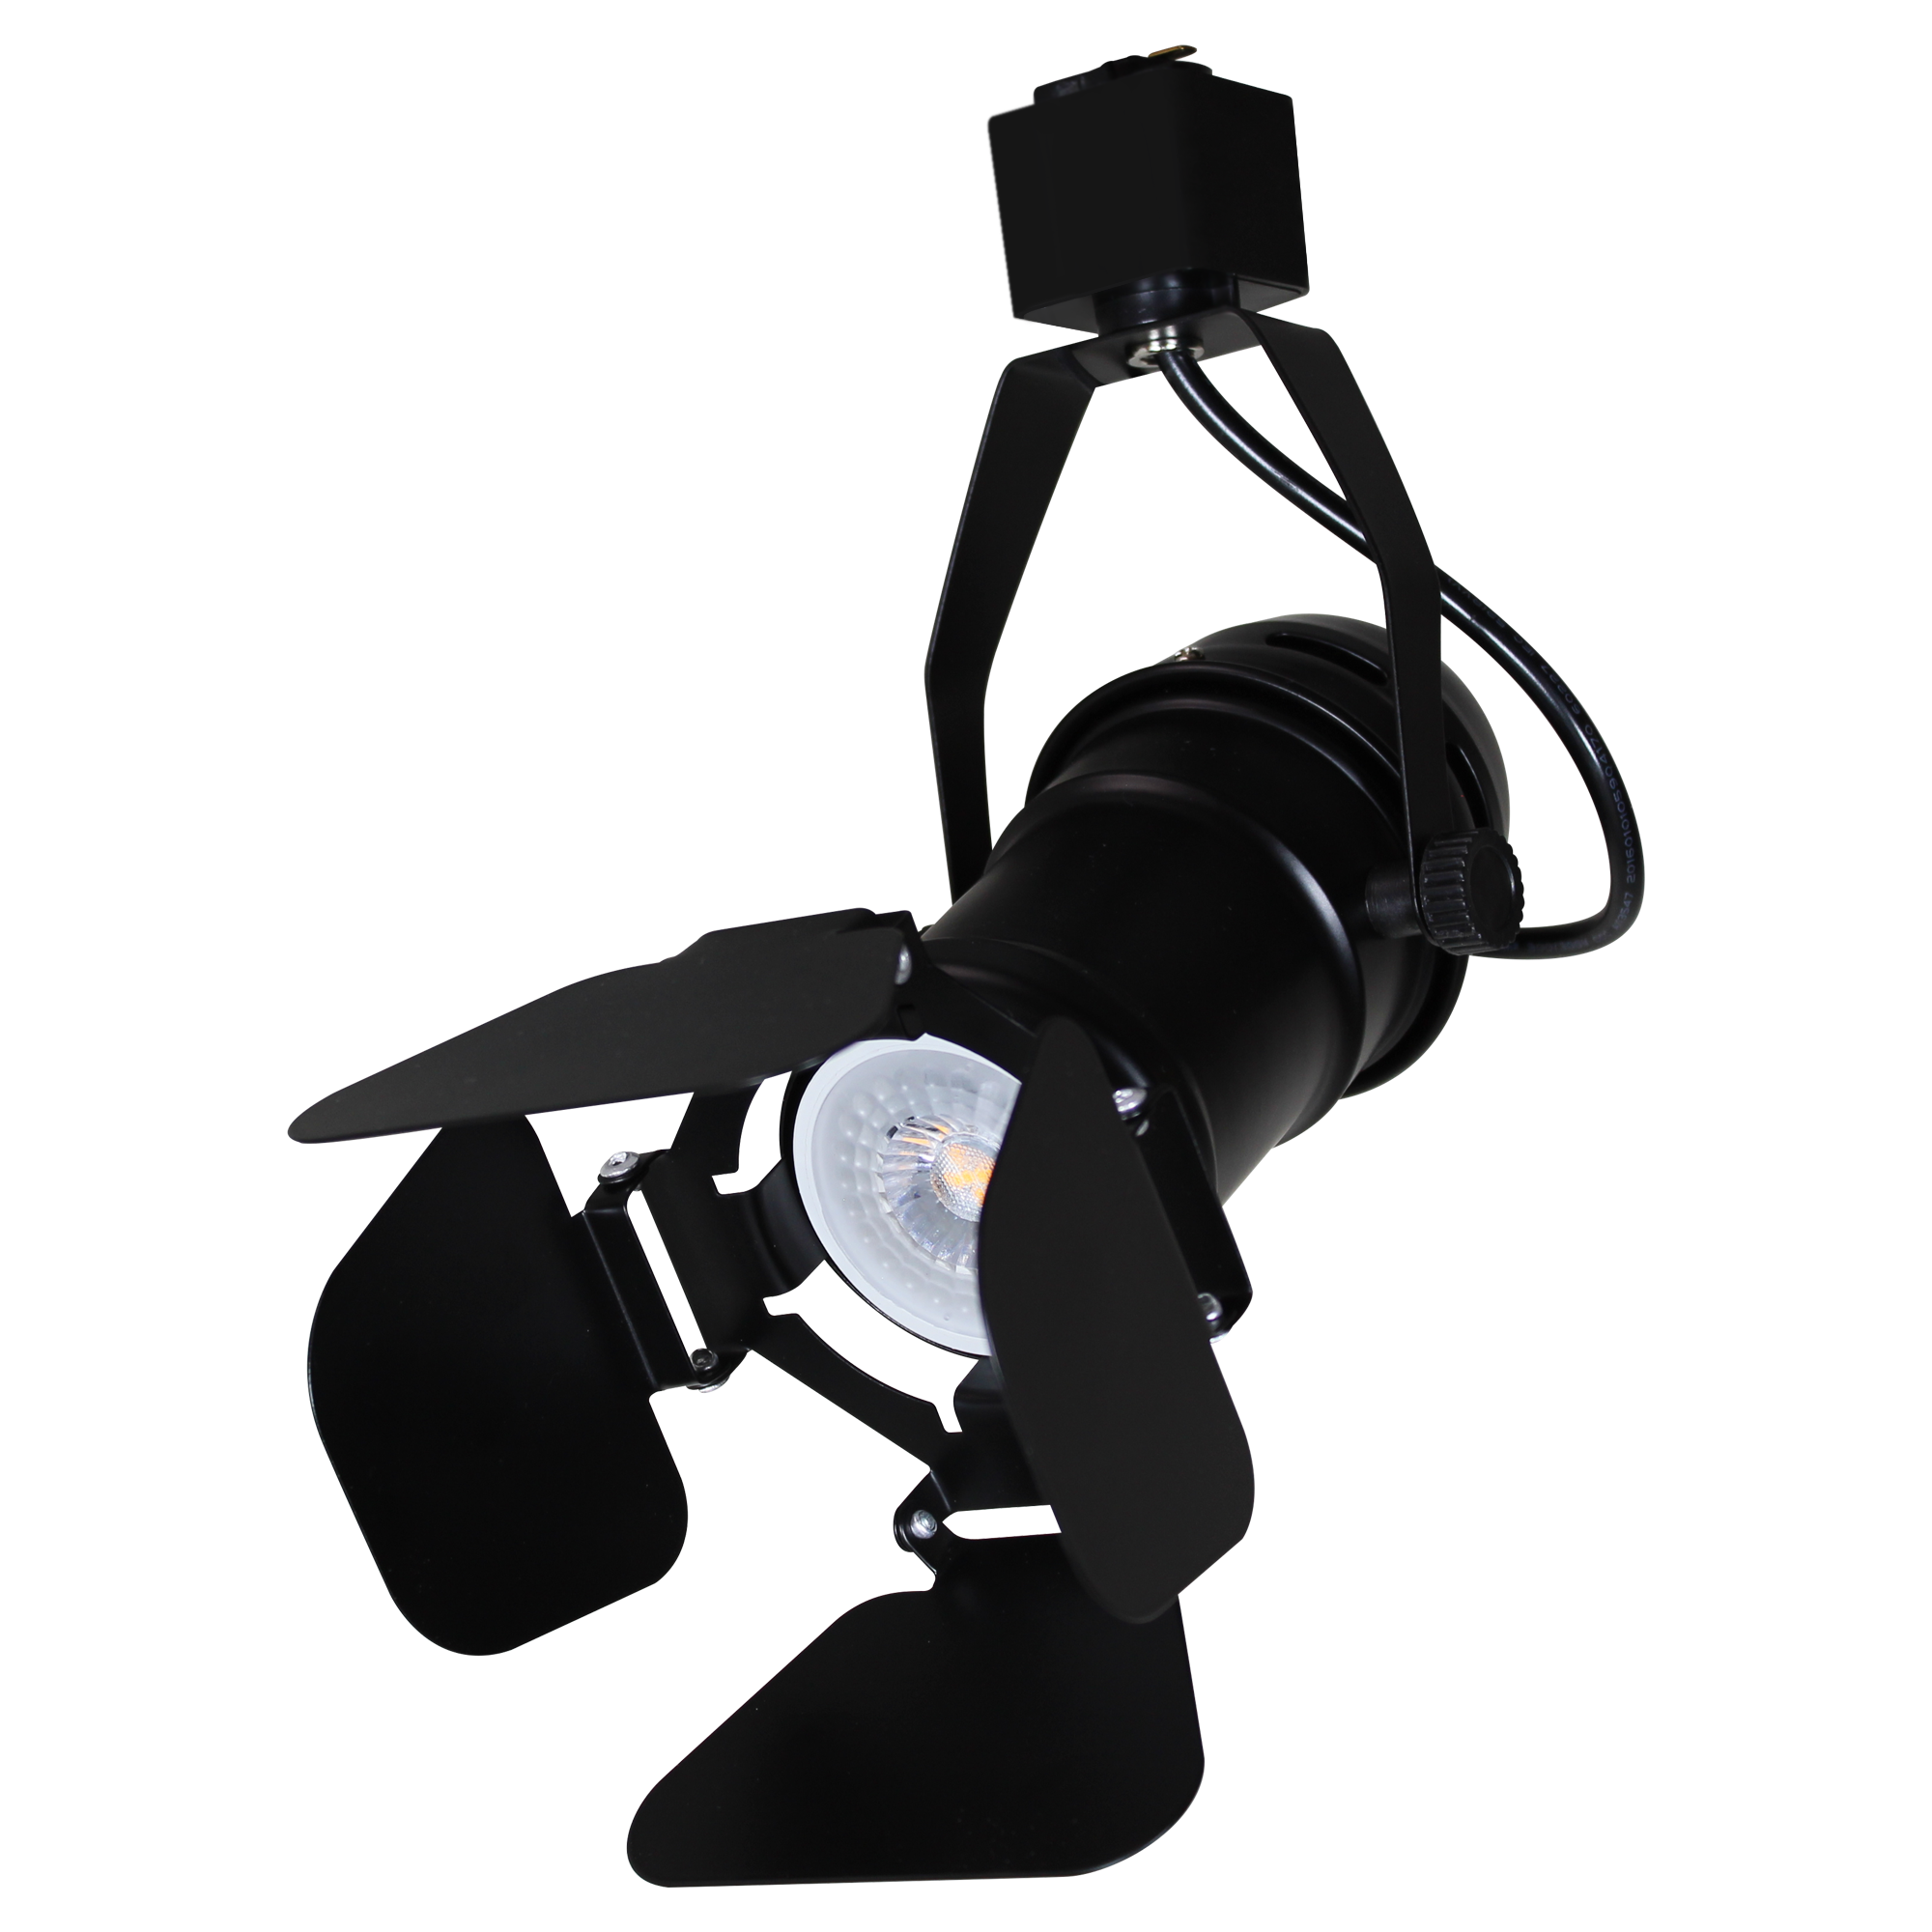 Luminaria con cortadores para riel en techo 50W Max 120V~ tipo spotlight, Modelo TL-5141.R Illux